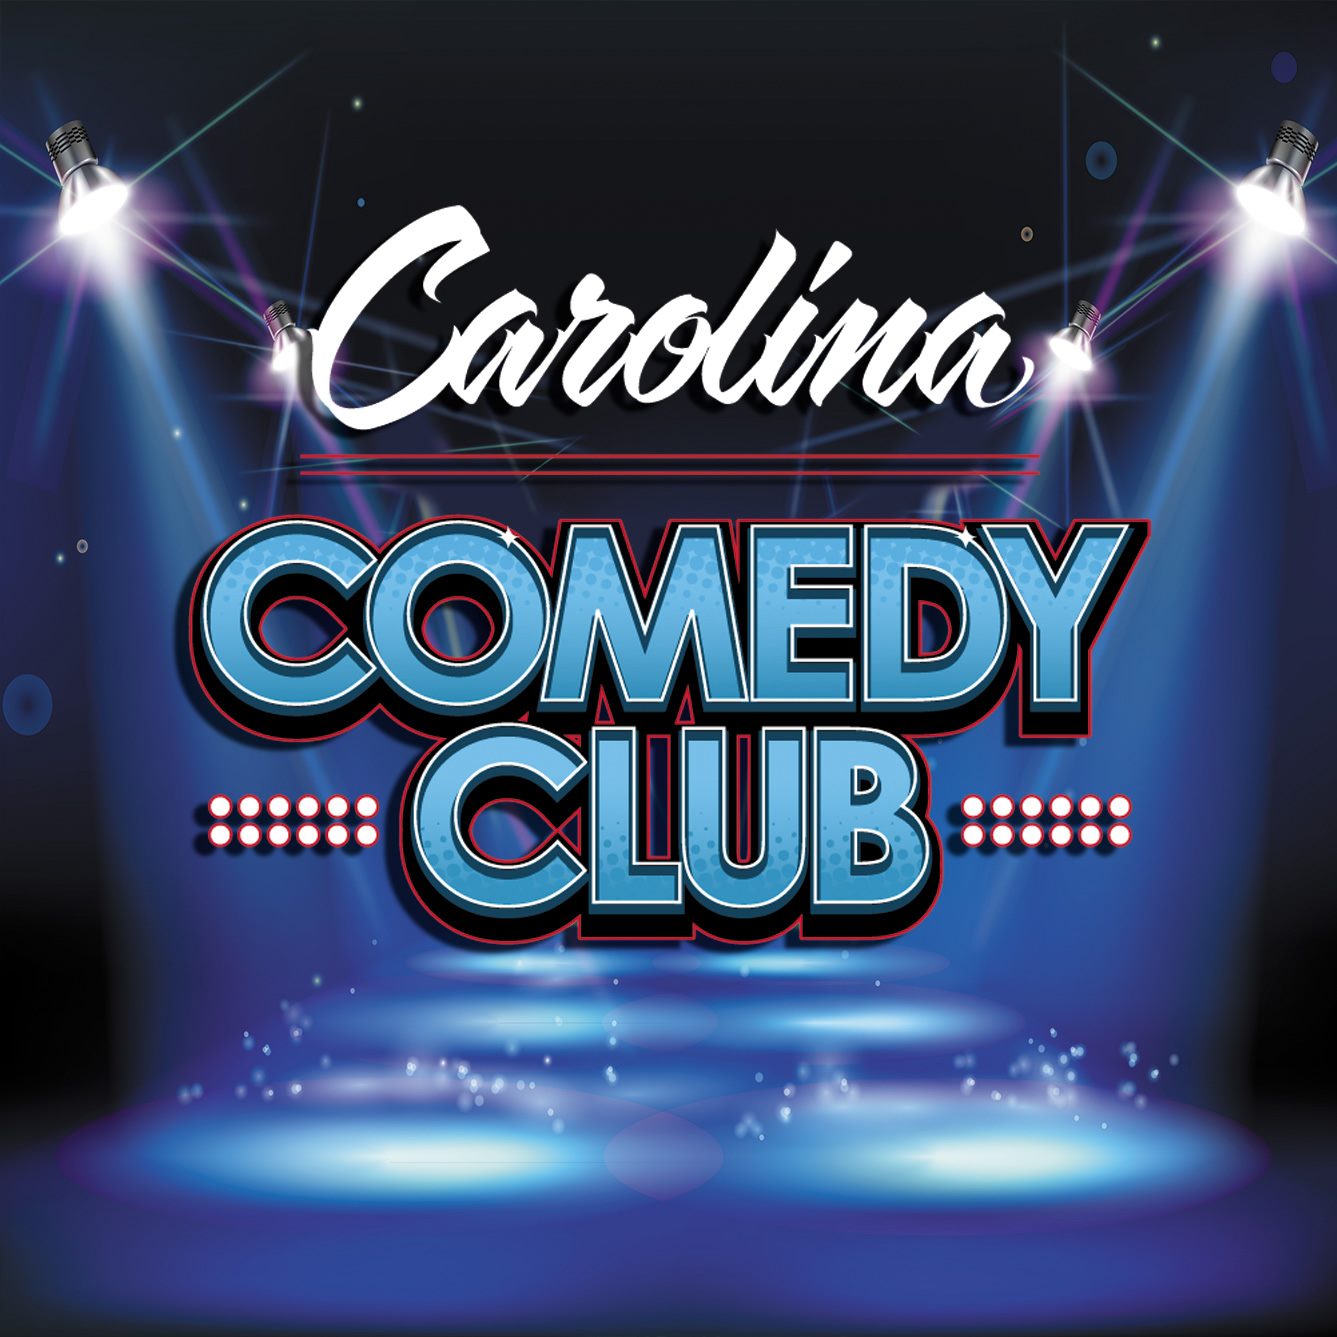 Carolina Comedy Club